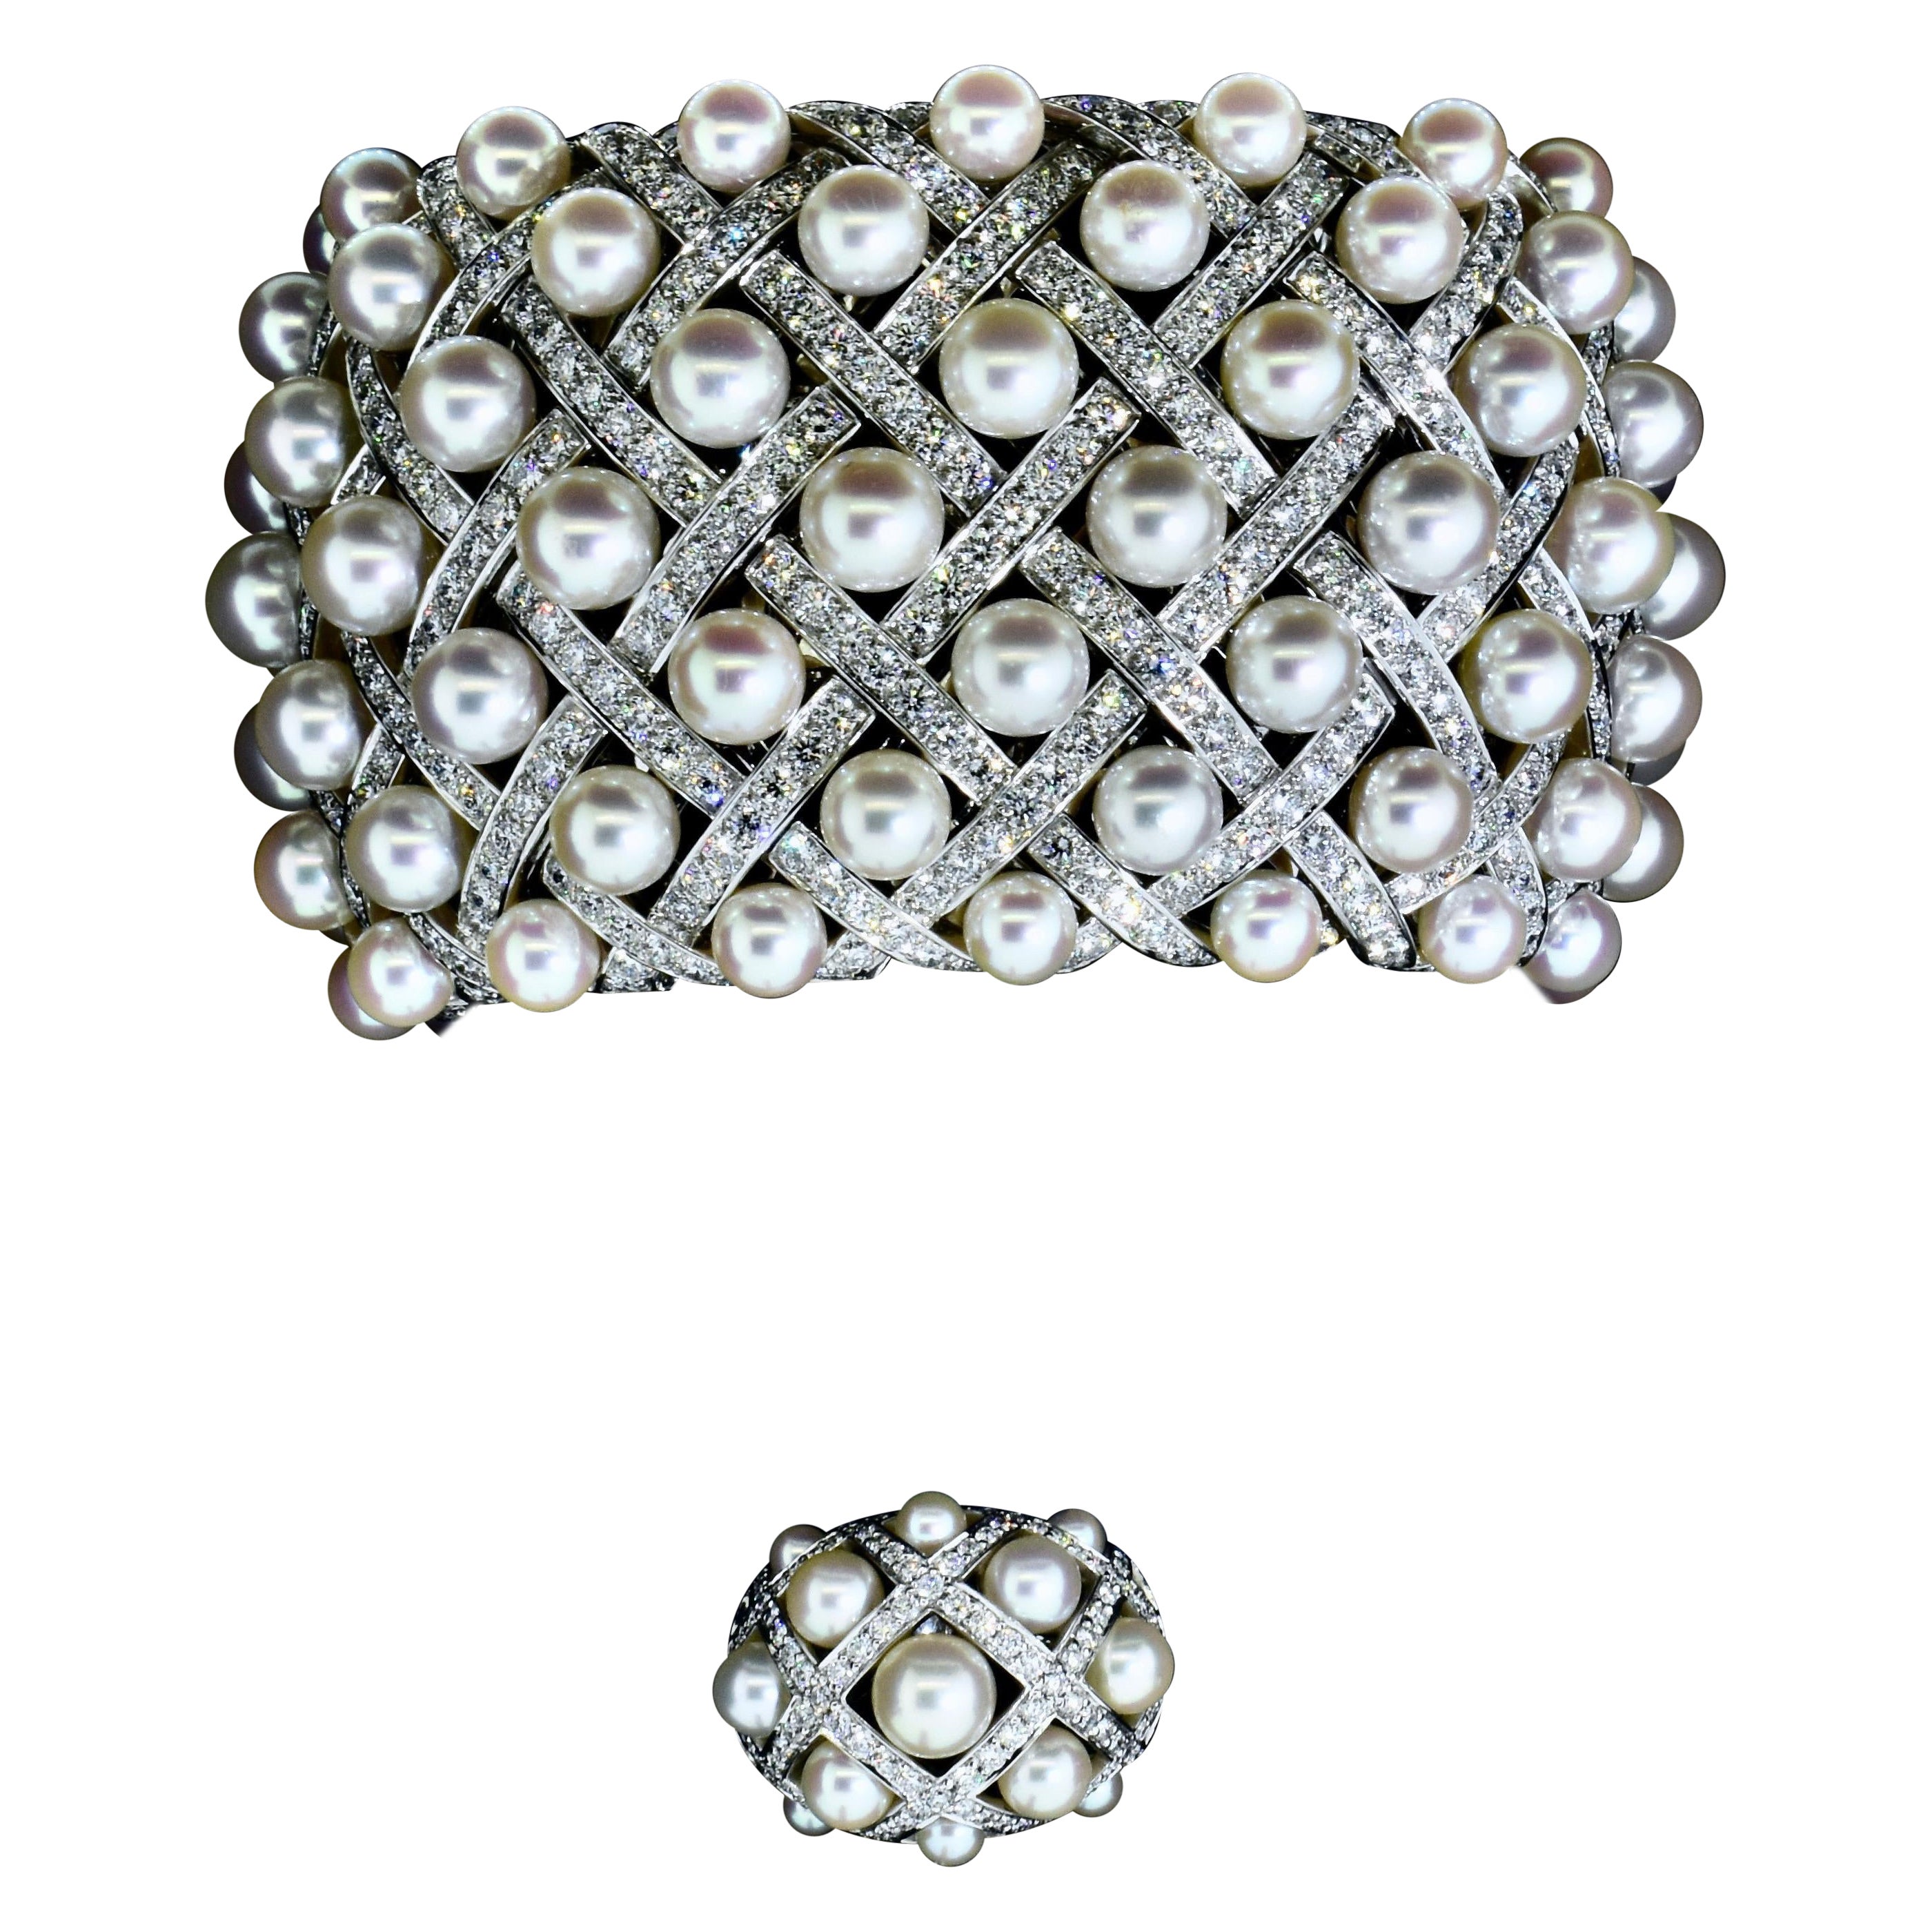 Chanel Paris Matelasse-Perlen- und Pavé-Diamanten-Armreif und passender Ring, begleitet vom Originalbrief von Chanel an die ursprüngliche Kundin (und zuletzt 2018 auf etwas mehr als 300.000 US-Dollar geschätzt).
Selbst wenn man nur die beteiligten